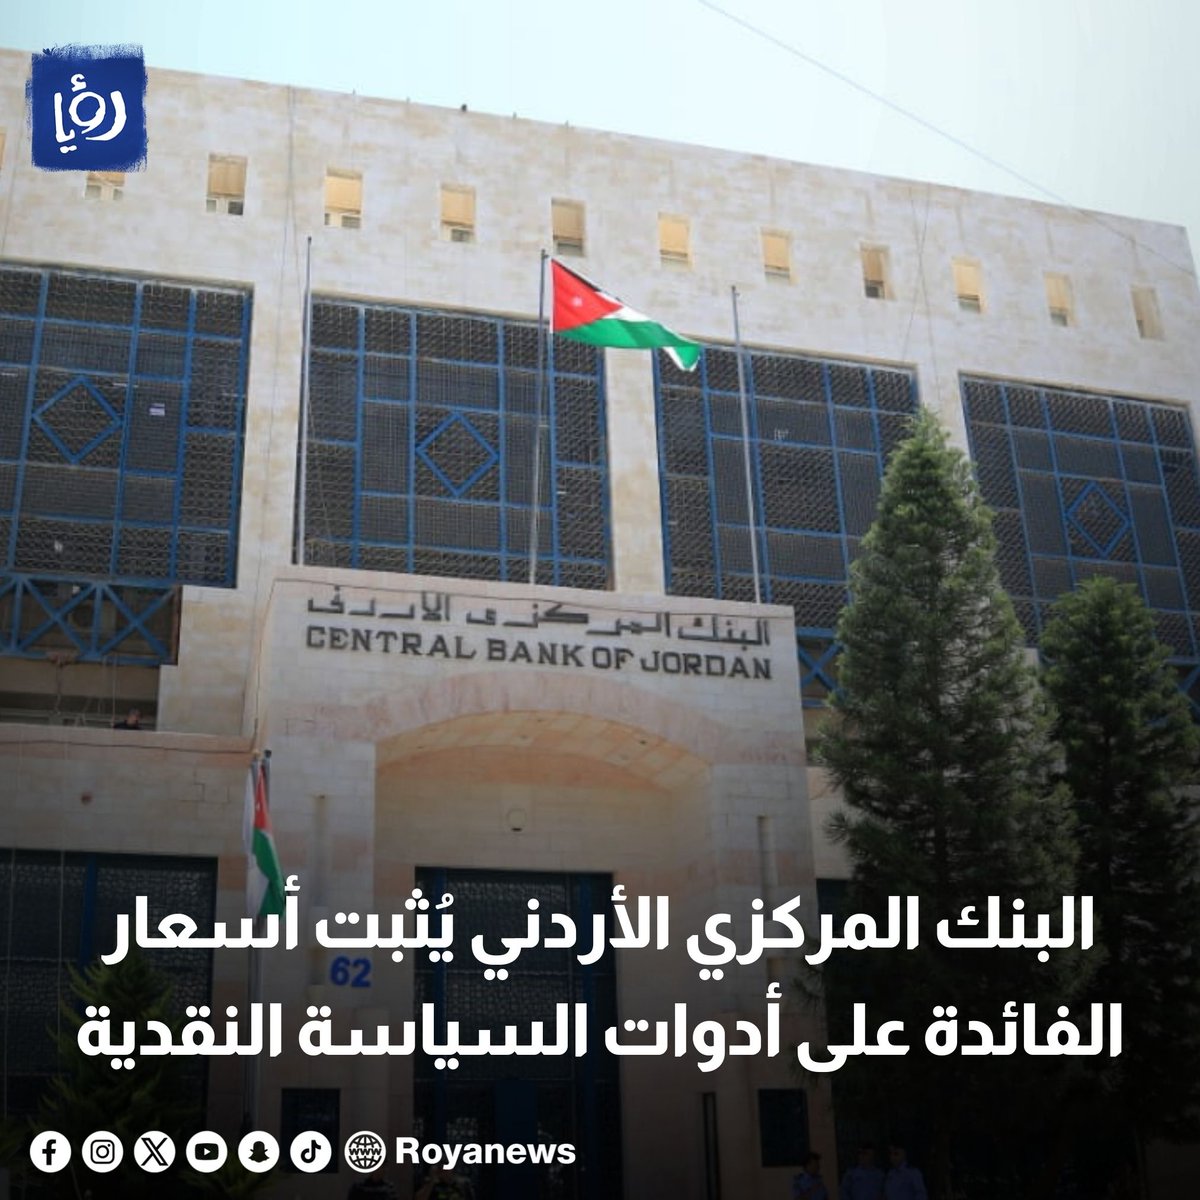 البنك المركزي الأردني يُثبت أسعار الفائدة على أدوات السياسة النقدية
royanews.tv/news/326022
#عاجل #رؤيا_الإخباري #الأردن #أسعار_الفائدة